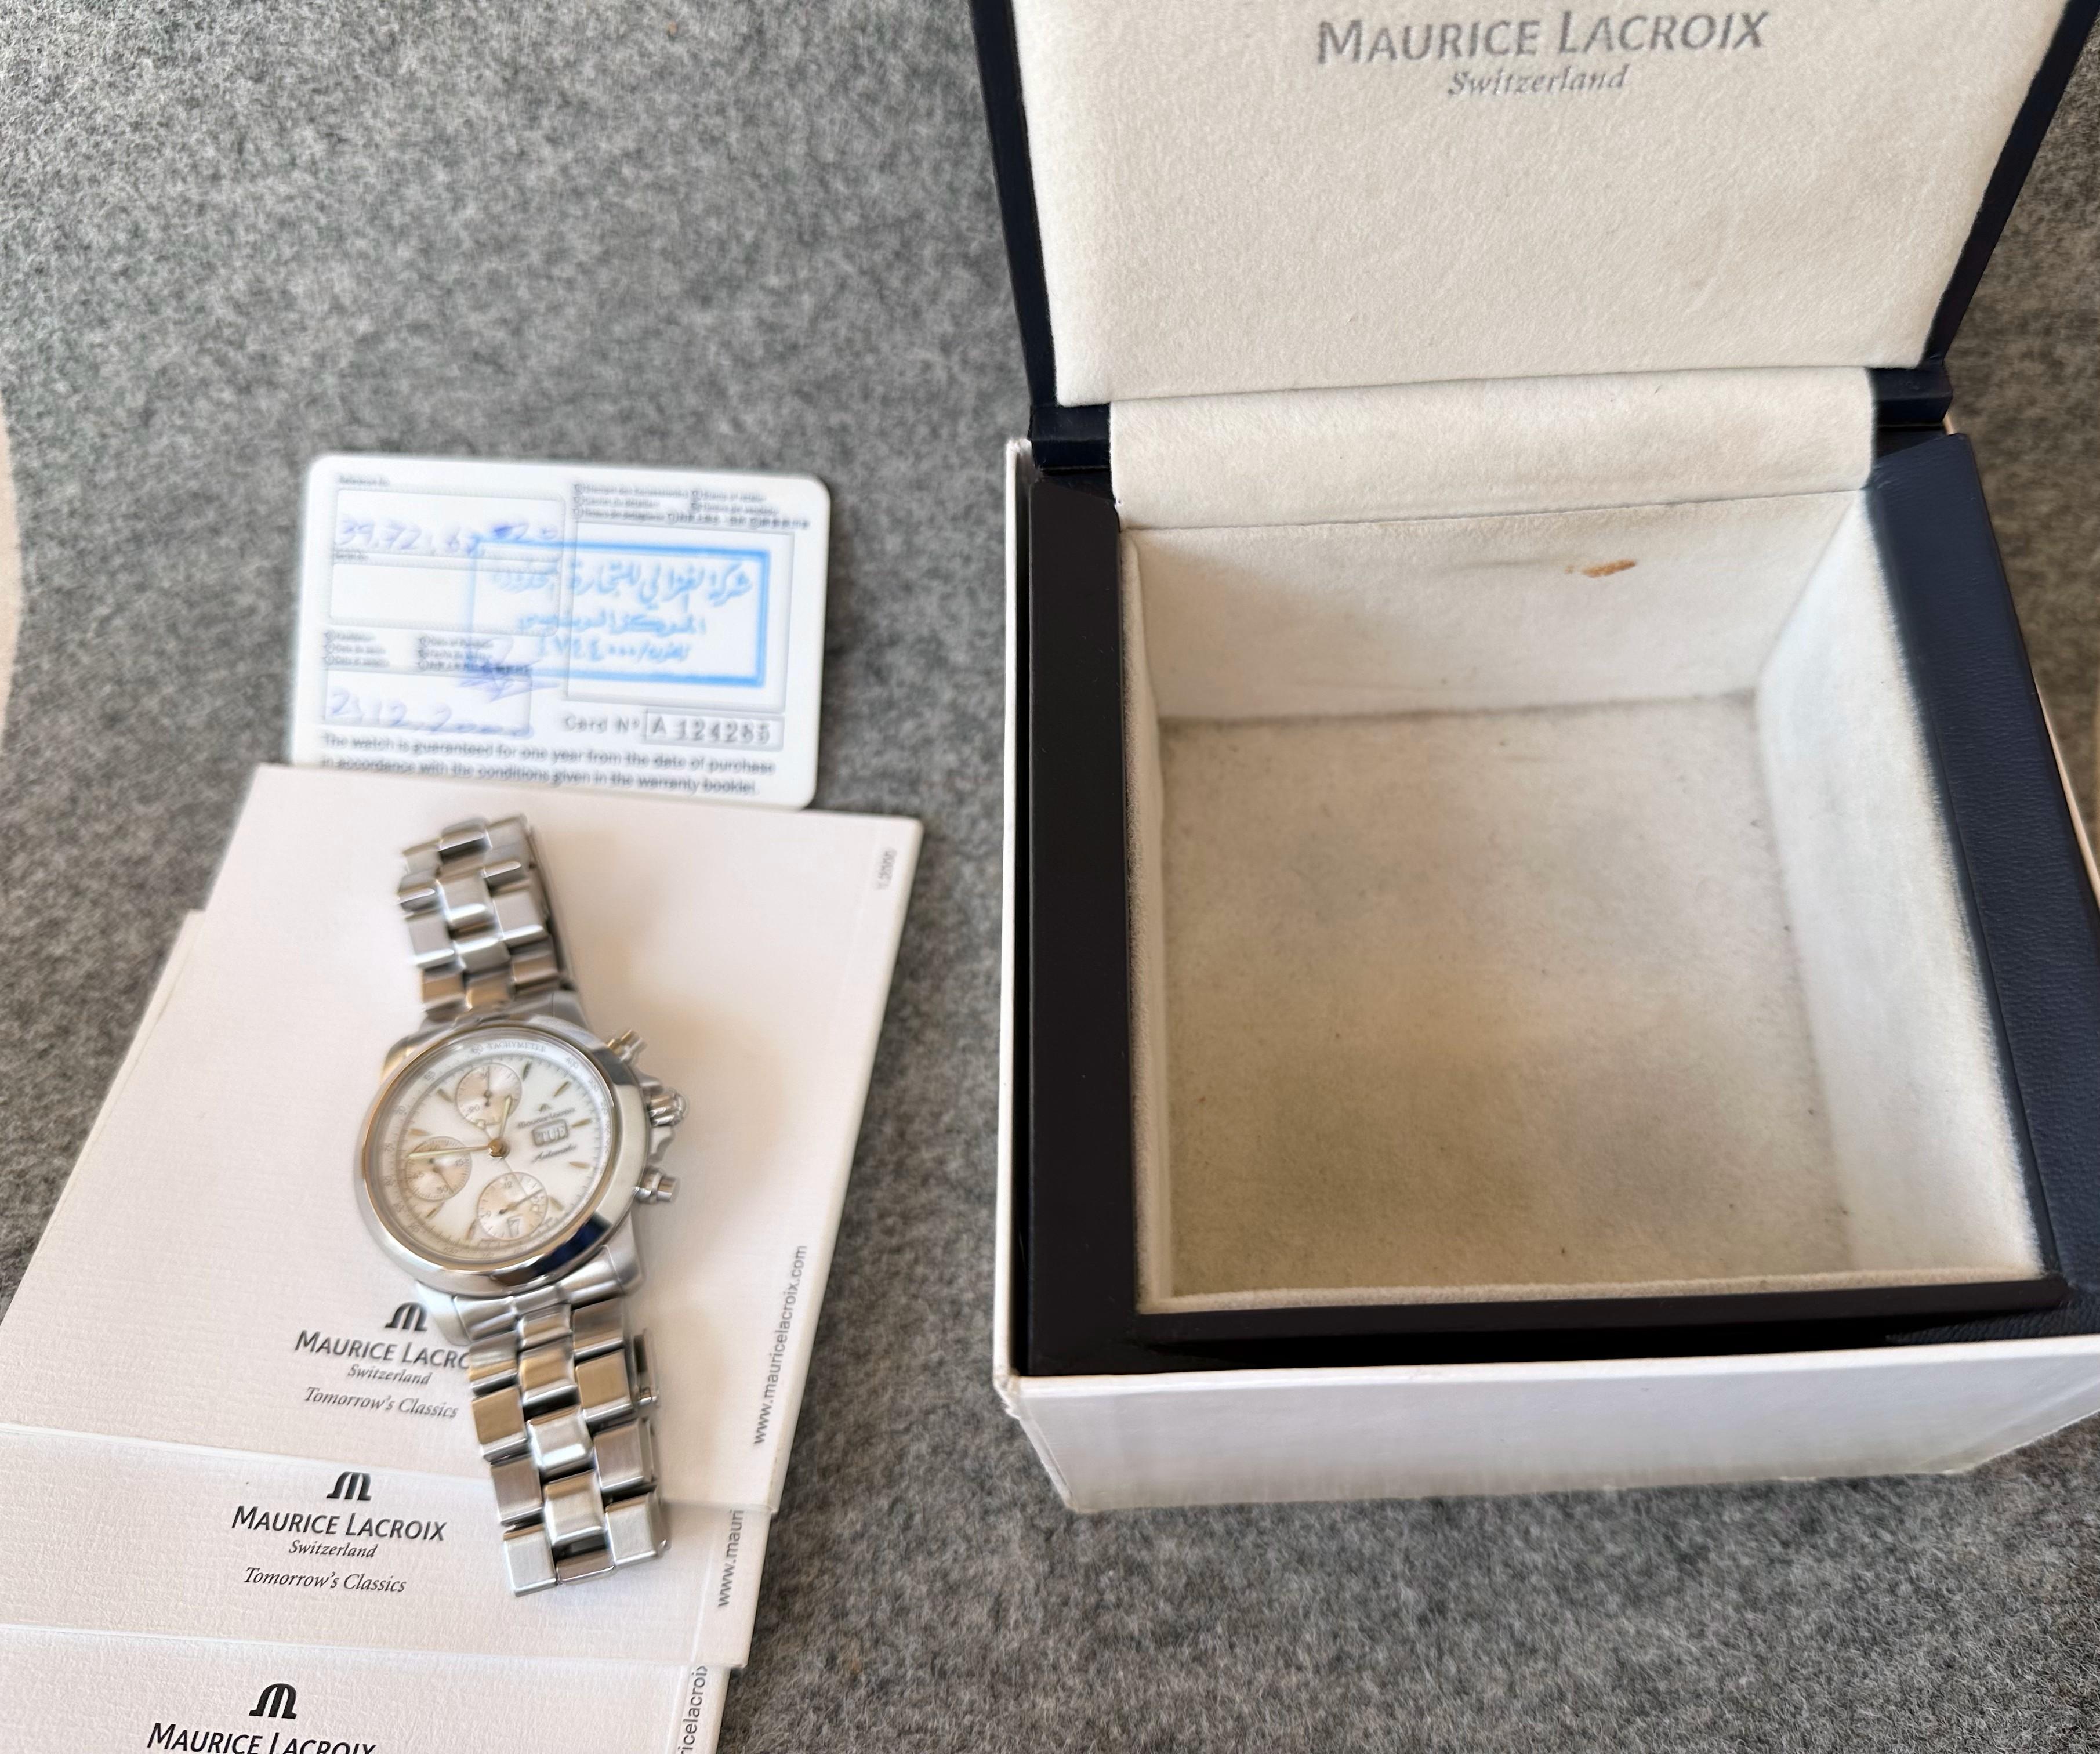 Maurice Lacroix Les Classiques Chronographe Automatic Chronograph 39721 Full Set For Sale 10